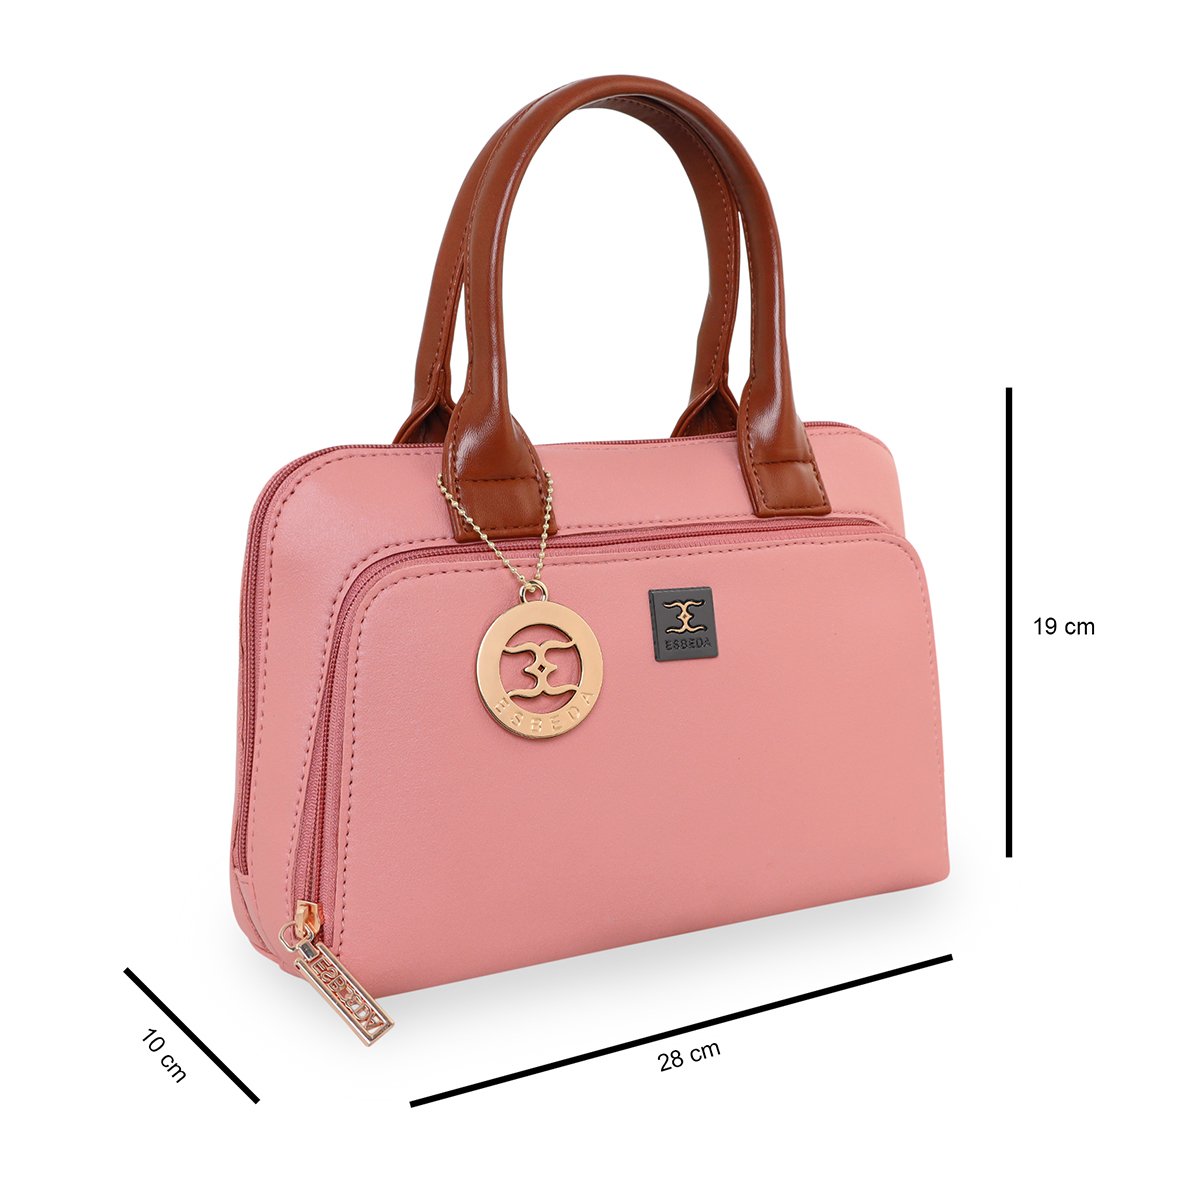 Van Heusen Women's Shoulder Bag (Dusty Pink) : Amazon.in: Shoes & Handbags